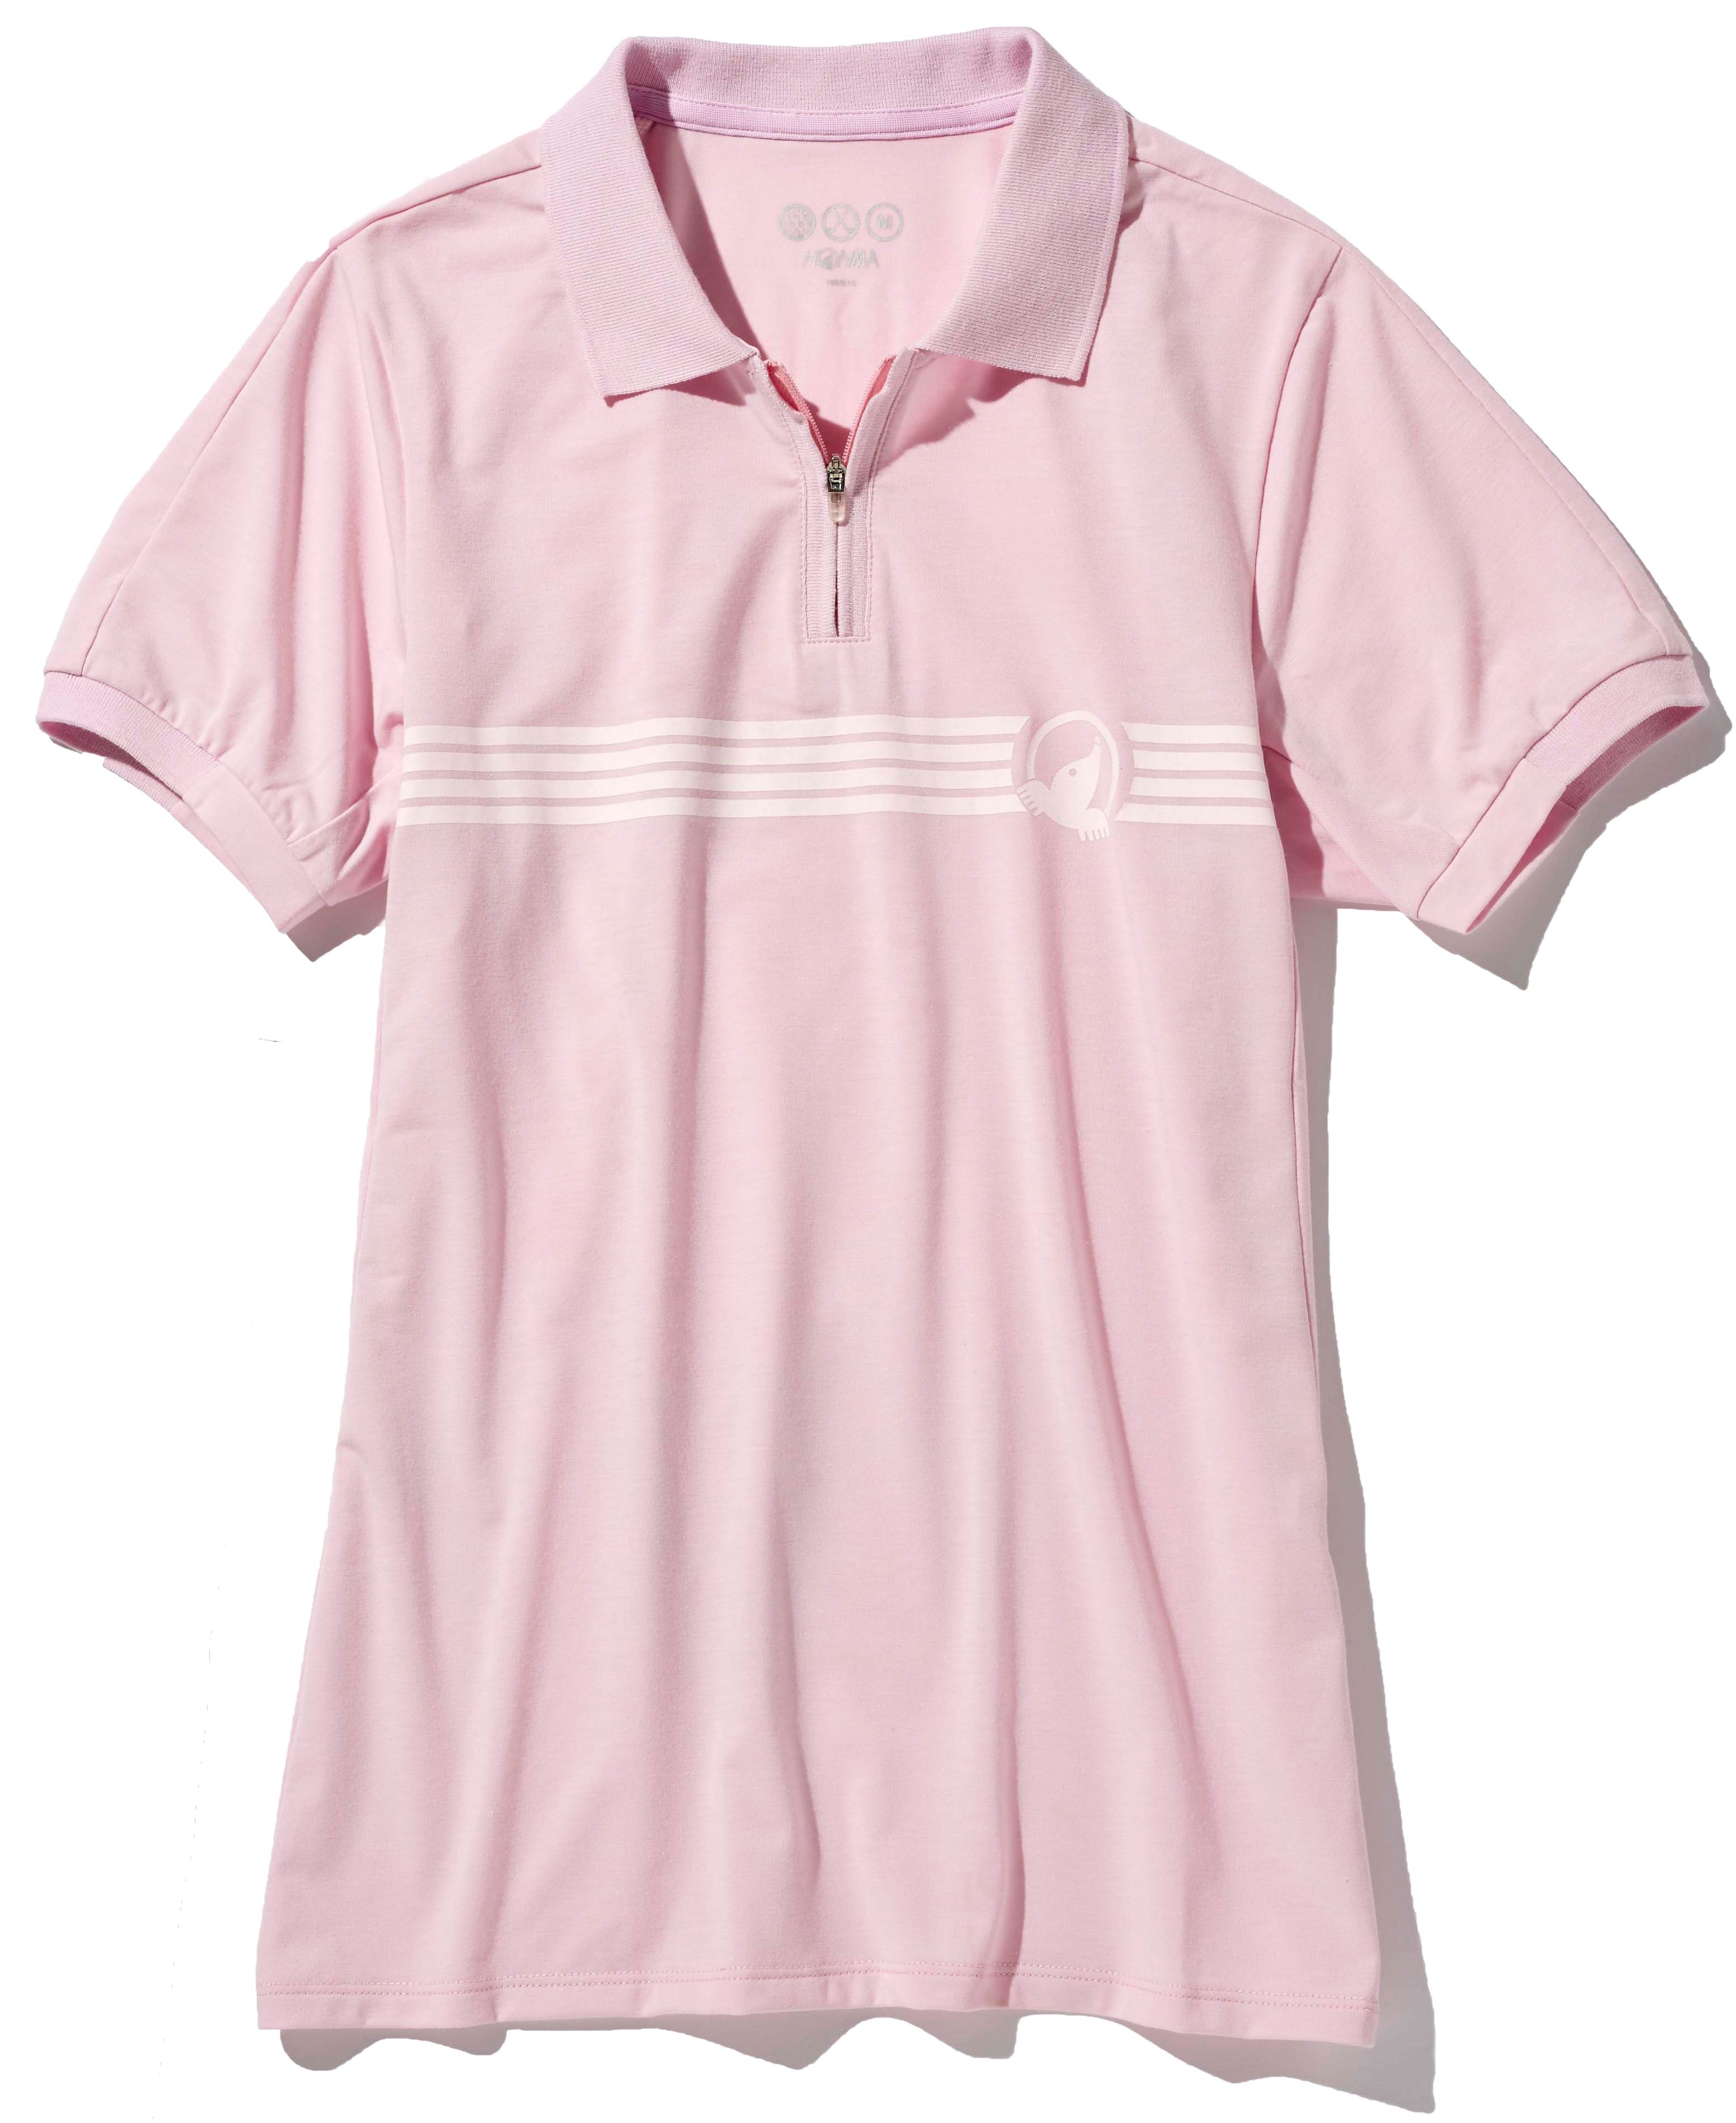 スポーティなジップアップシャツですが、春らしいパステルピンクで女性らしさも演出。シャツ¥11,000（本間ゴルフ）